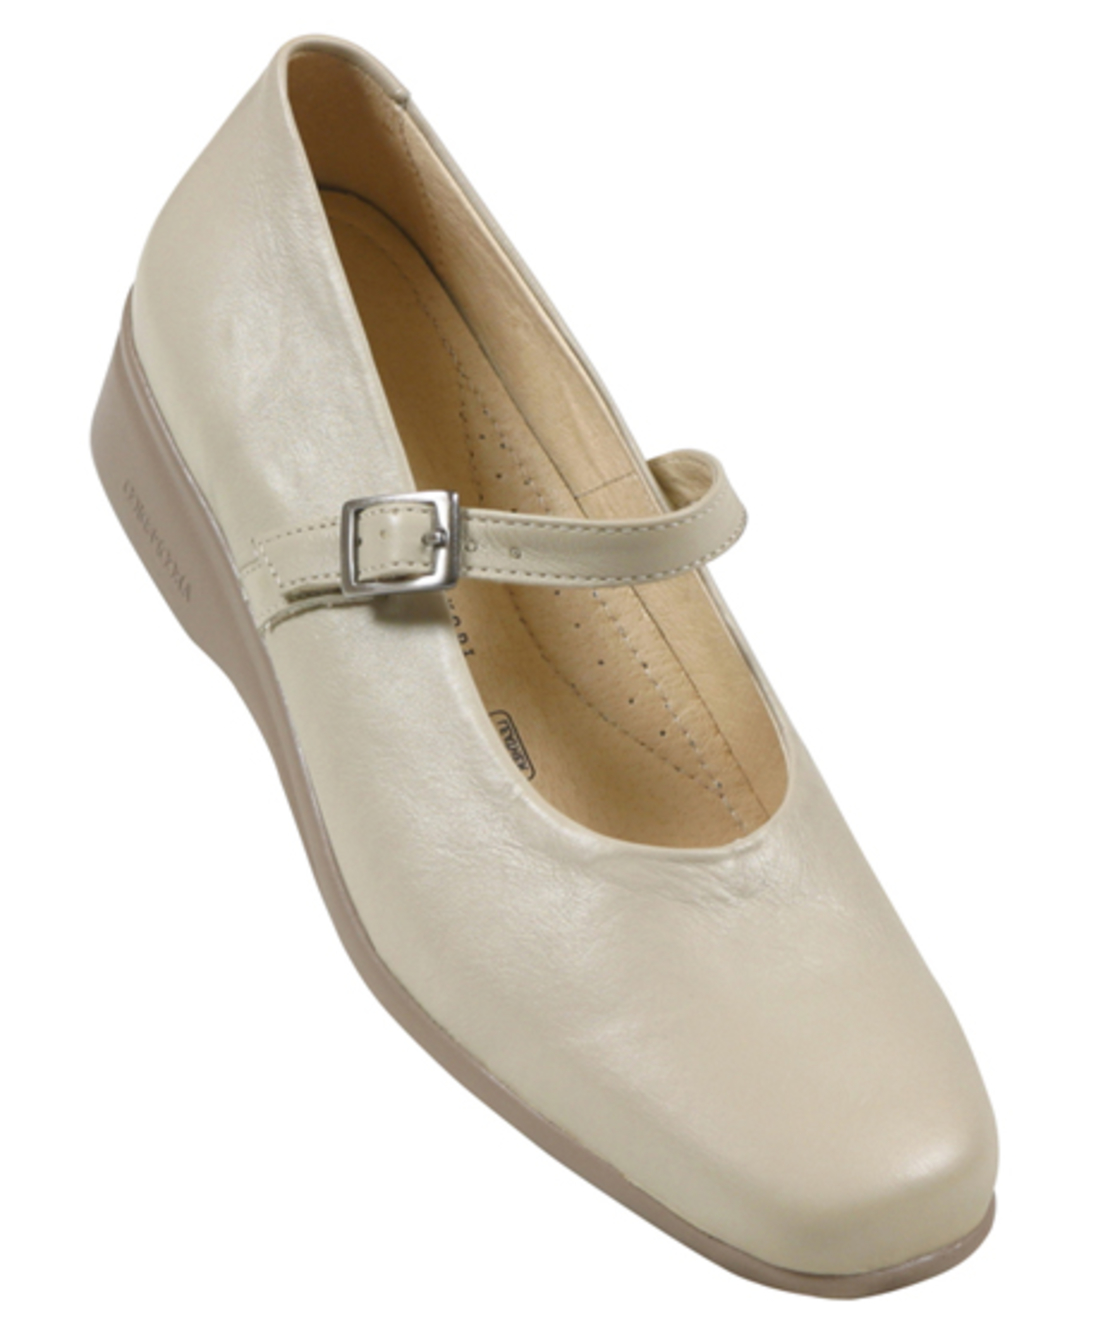  ארקופדיקו 5211 - נעלי נשים